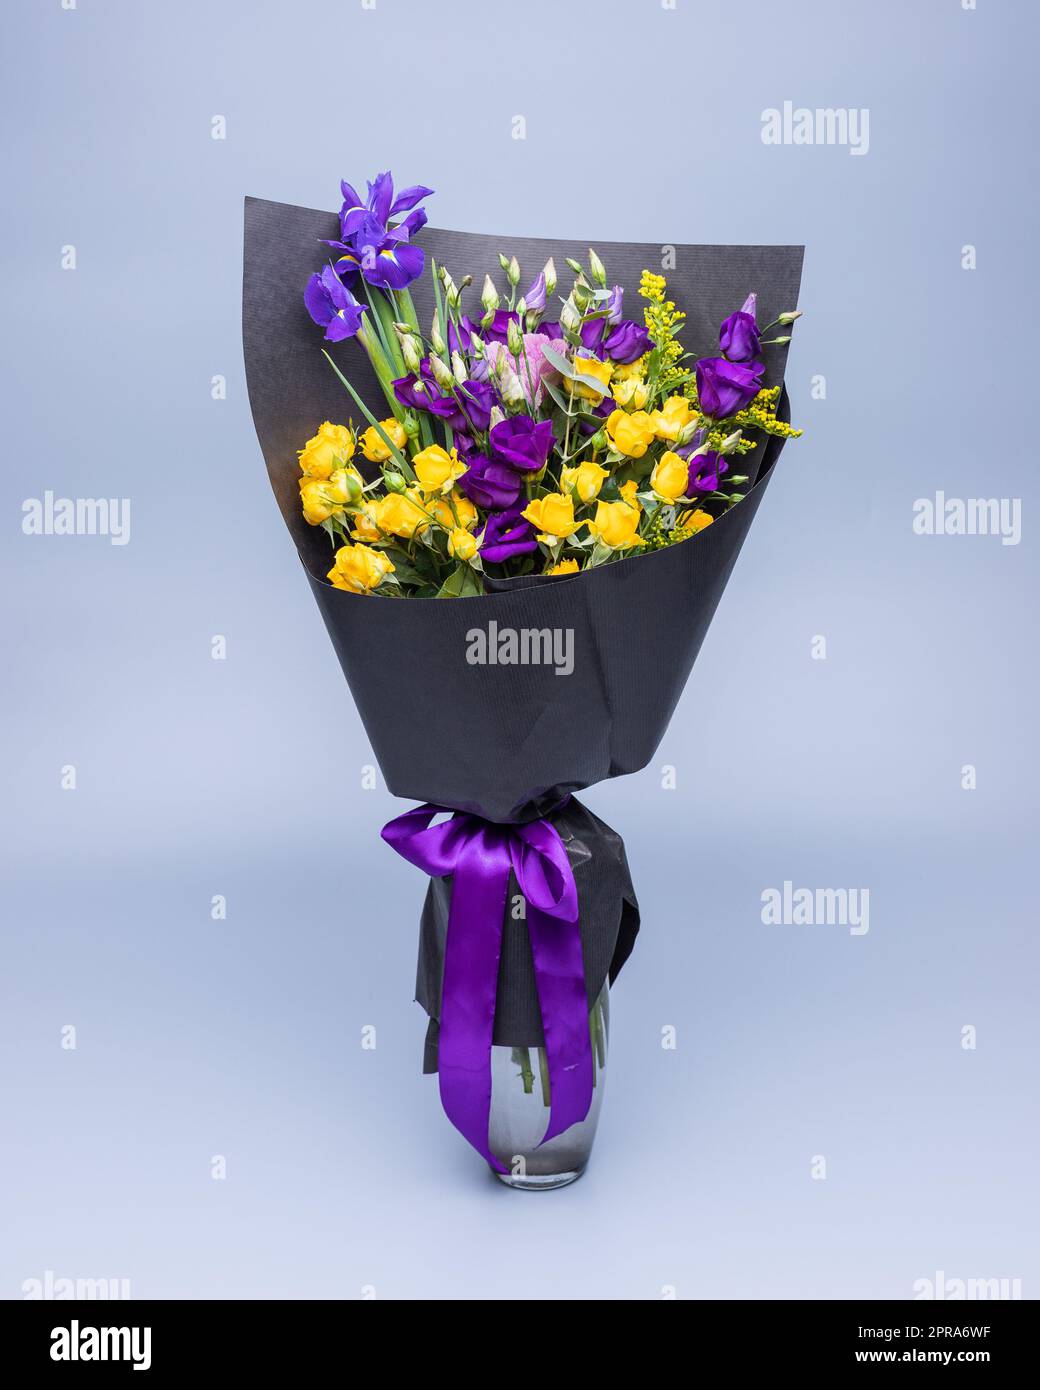 Elegante bouquet di fiori gialli e viola avvolti in carta nera su sfondo blu. Foto Stock